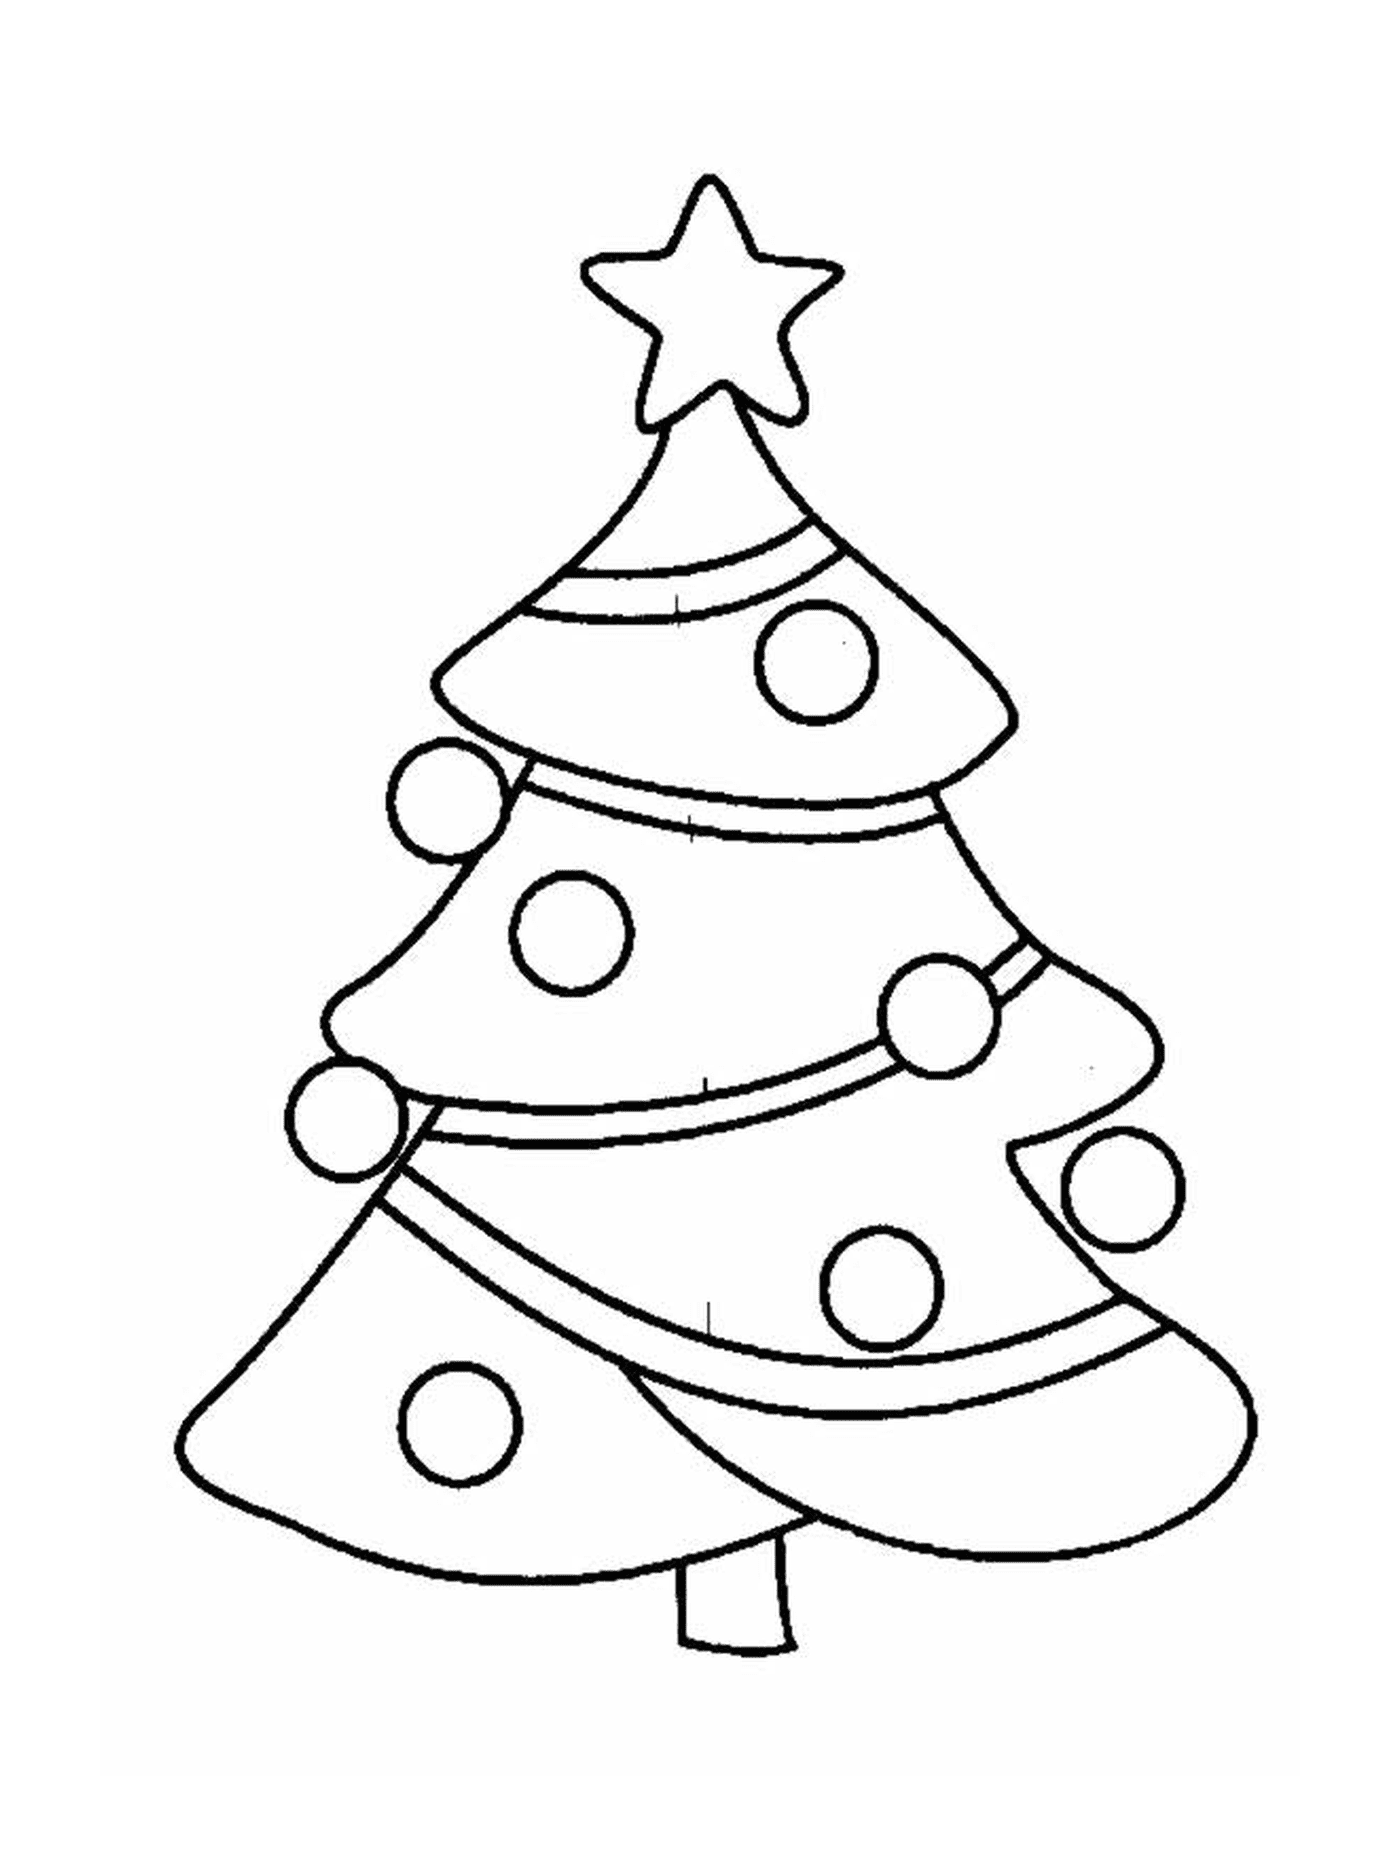  Uma árvore de Natal com ornamentos no topo 